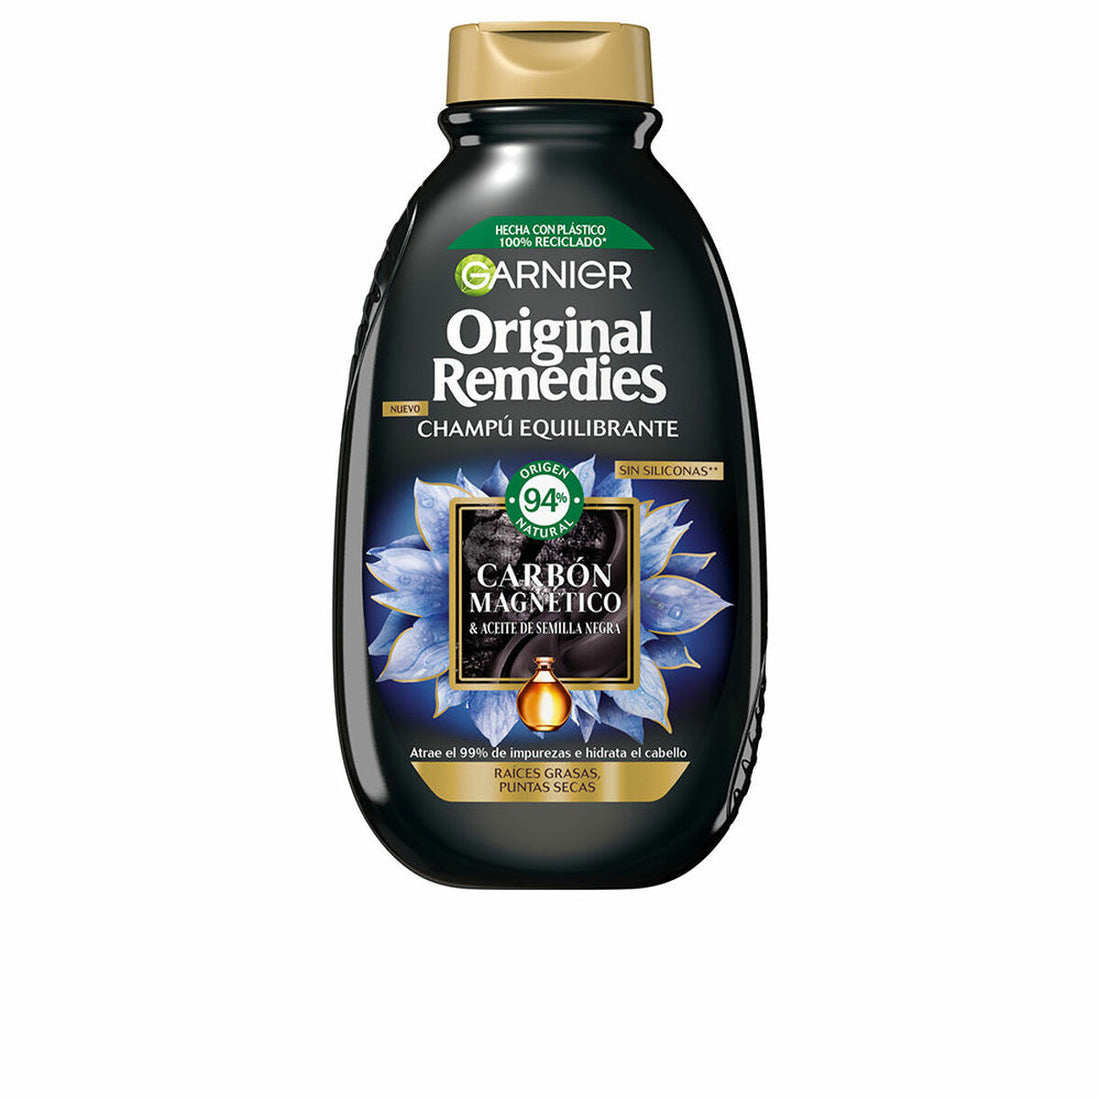 Shampoo Garnier Original Remedies Ausgleichende Magnetischer Kohlenstoff (300 ml)